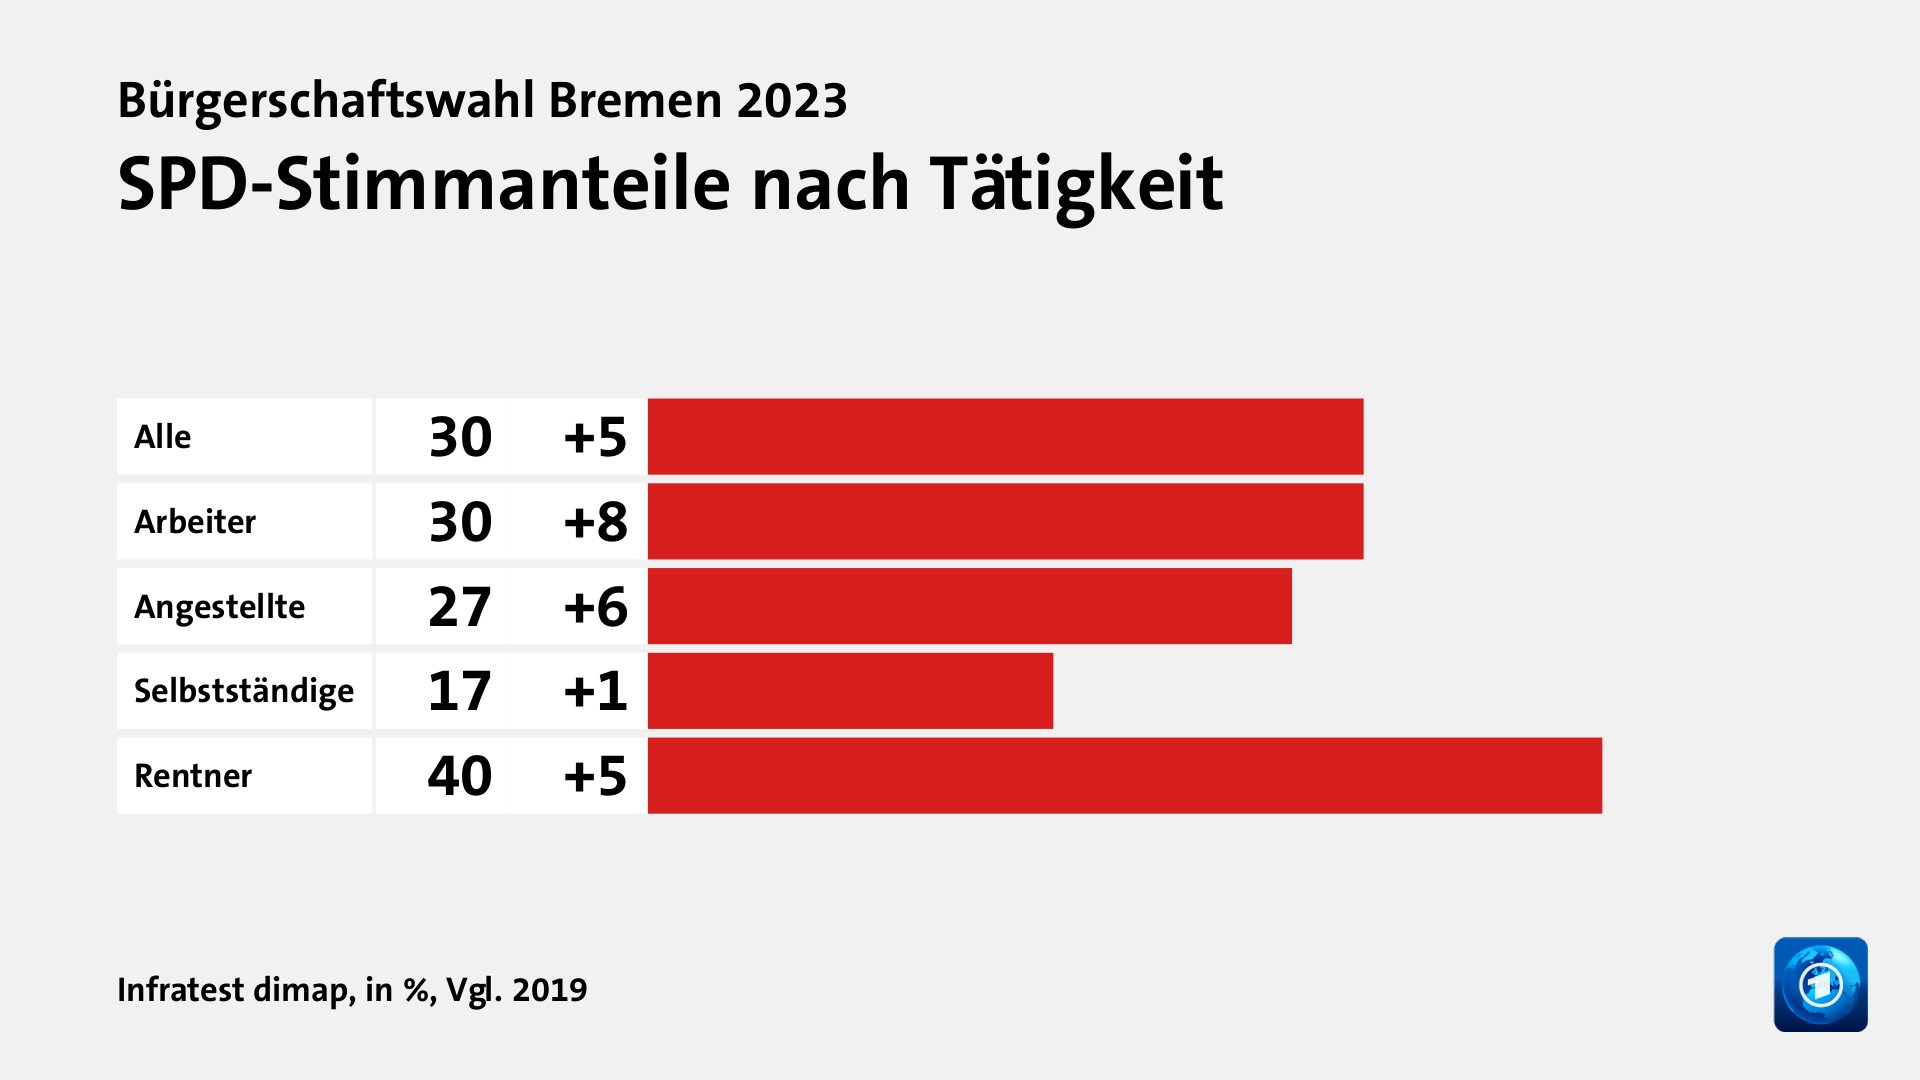 SPD-Stimmanteile nach Tätigkeit, in %, Vgl. 2019: Alle 30, Arbeiter 30, Angestellte 27, Selbstständige 17, Rentner 40, Quelle: Infratest dimap